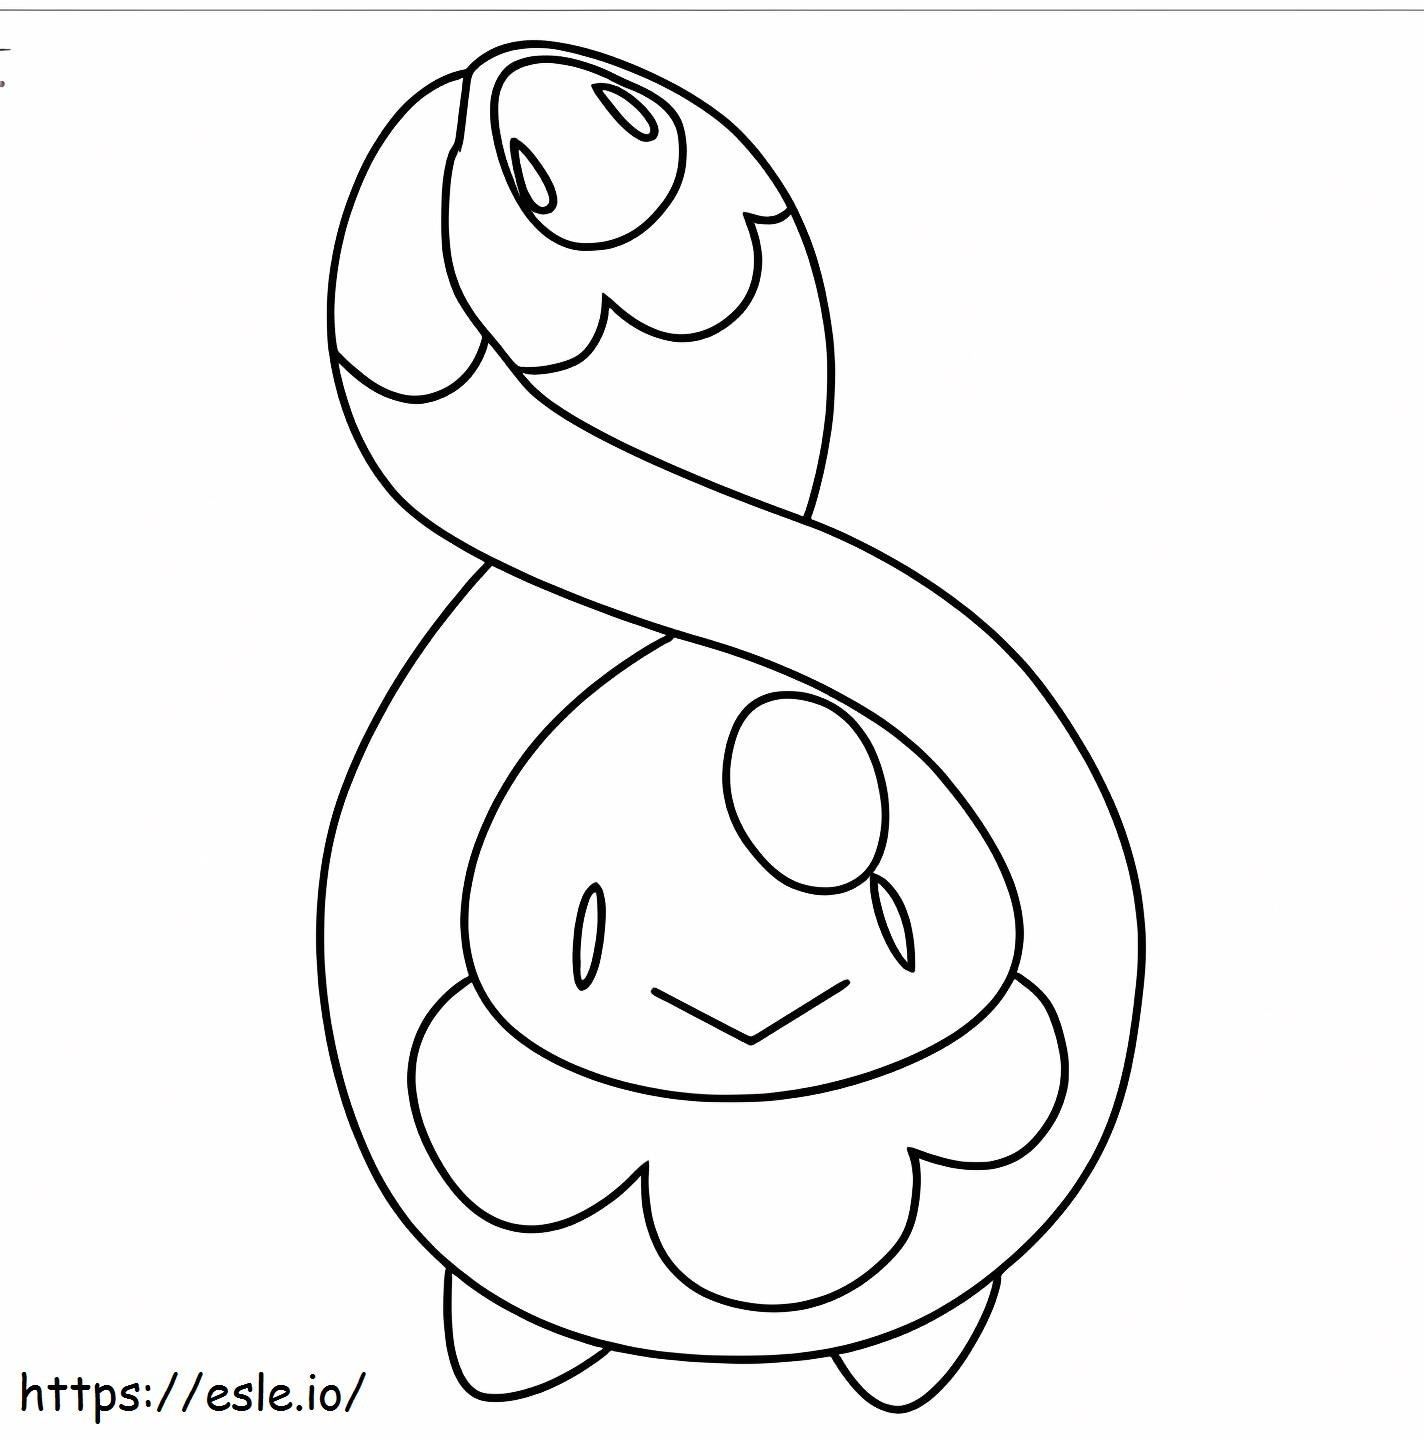 Coloriage Adorable Pokémon Budew à imprimer dessin